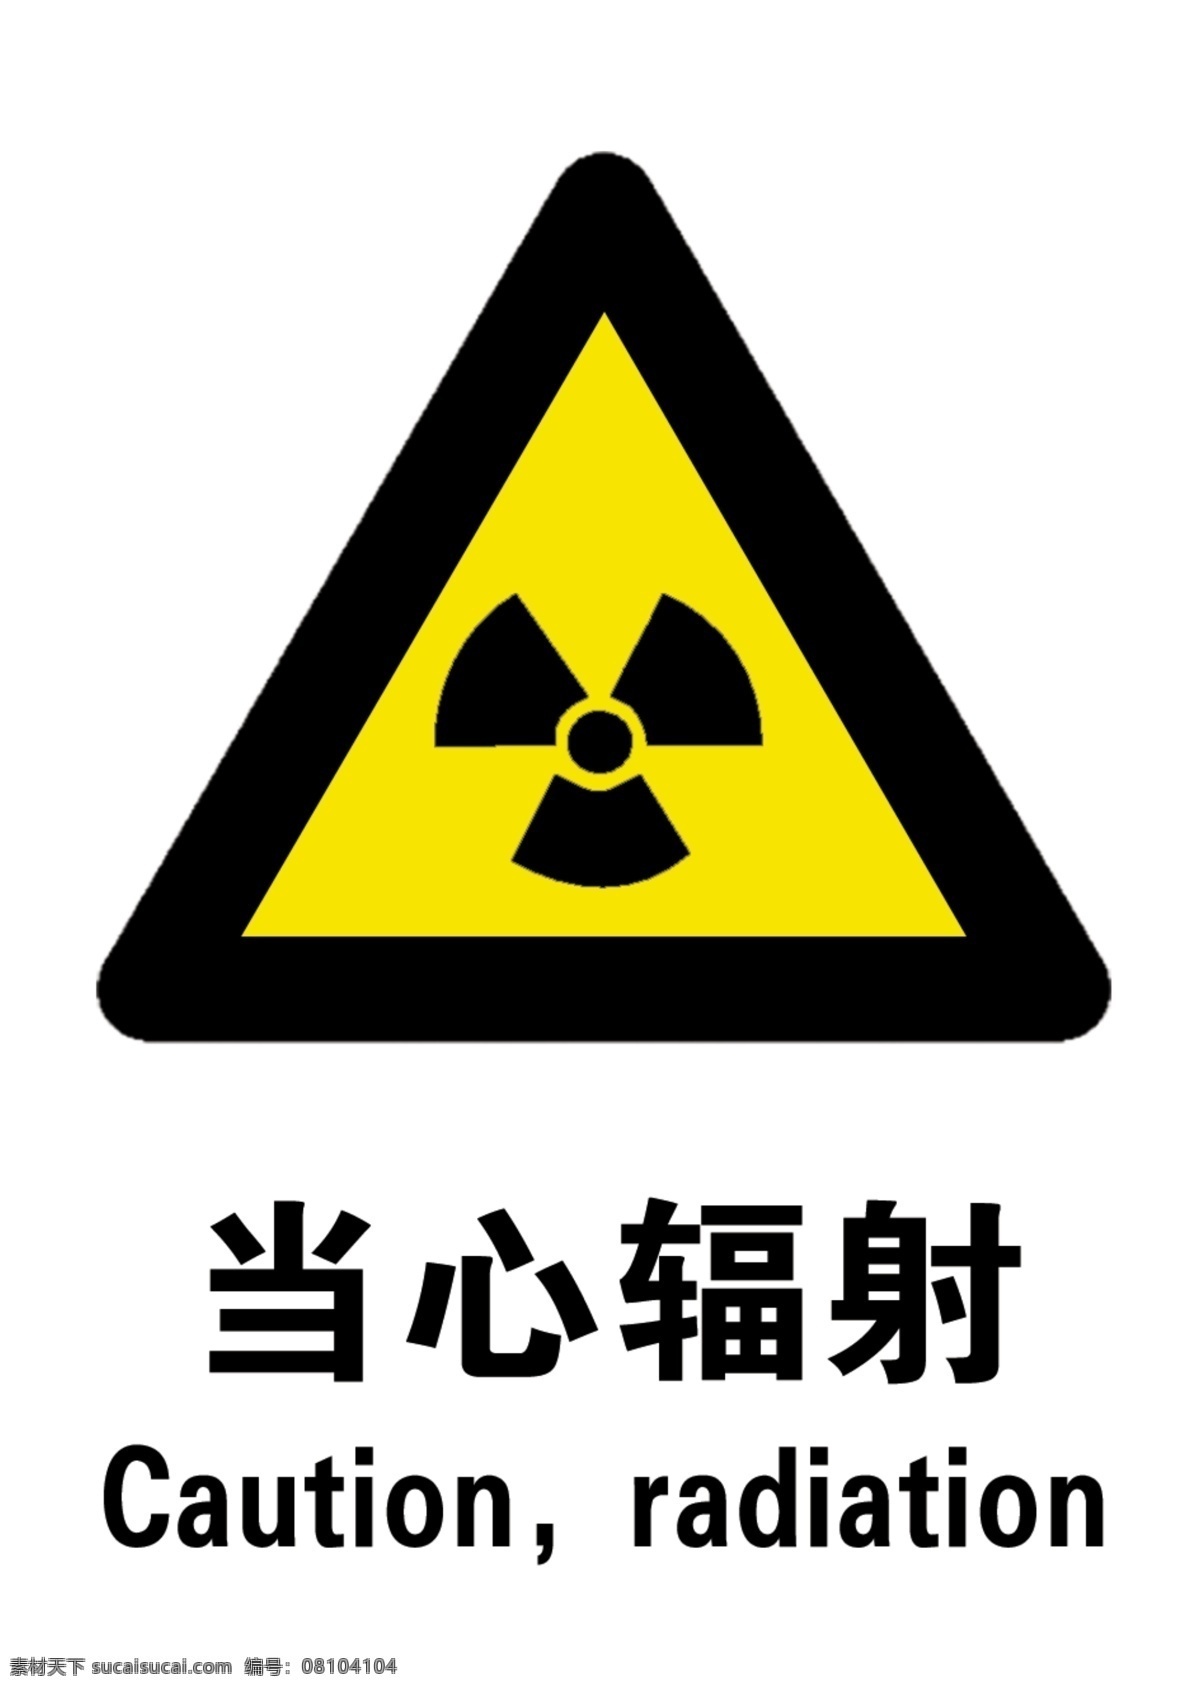 当心 辐射 当心辐射 小心辐射 psd源文件